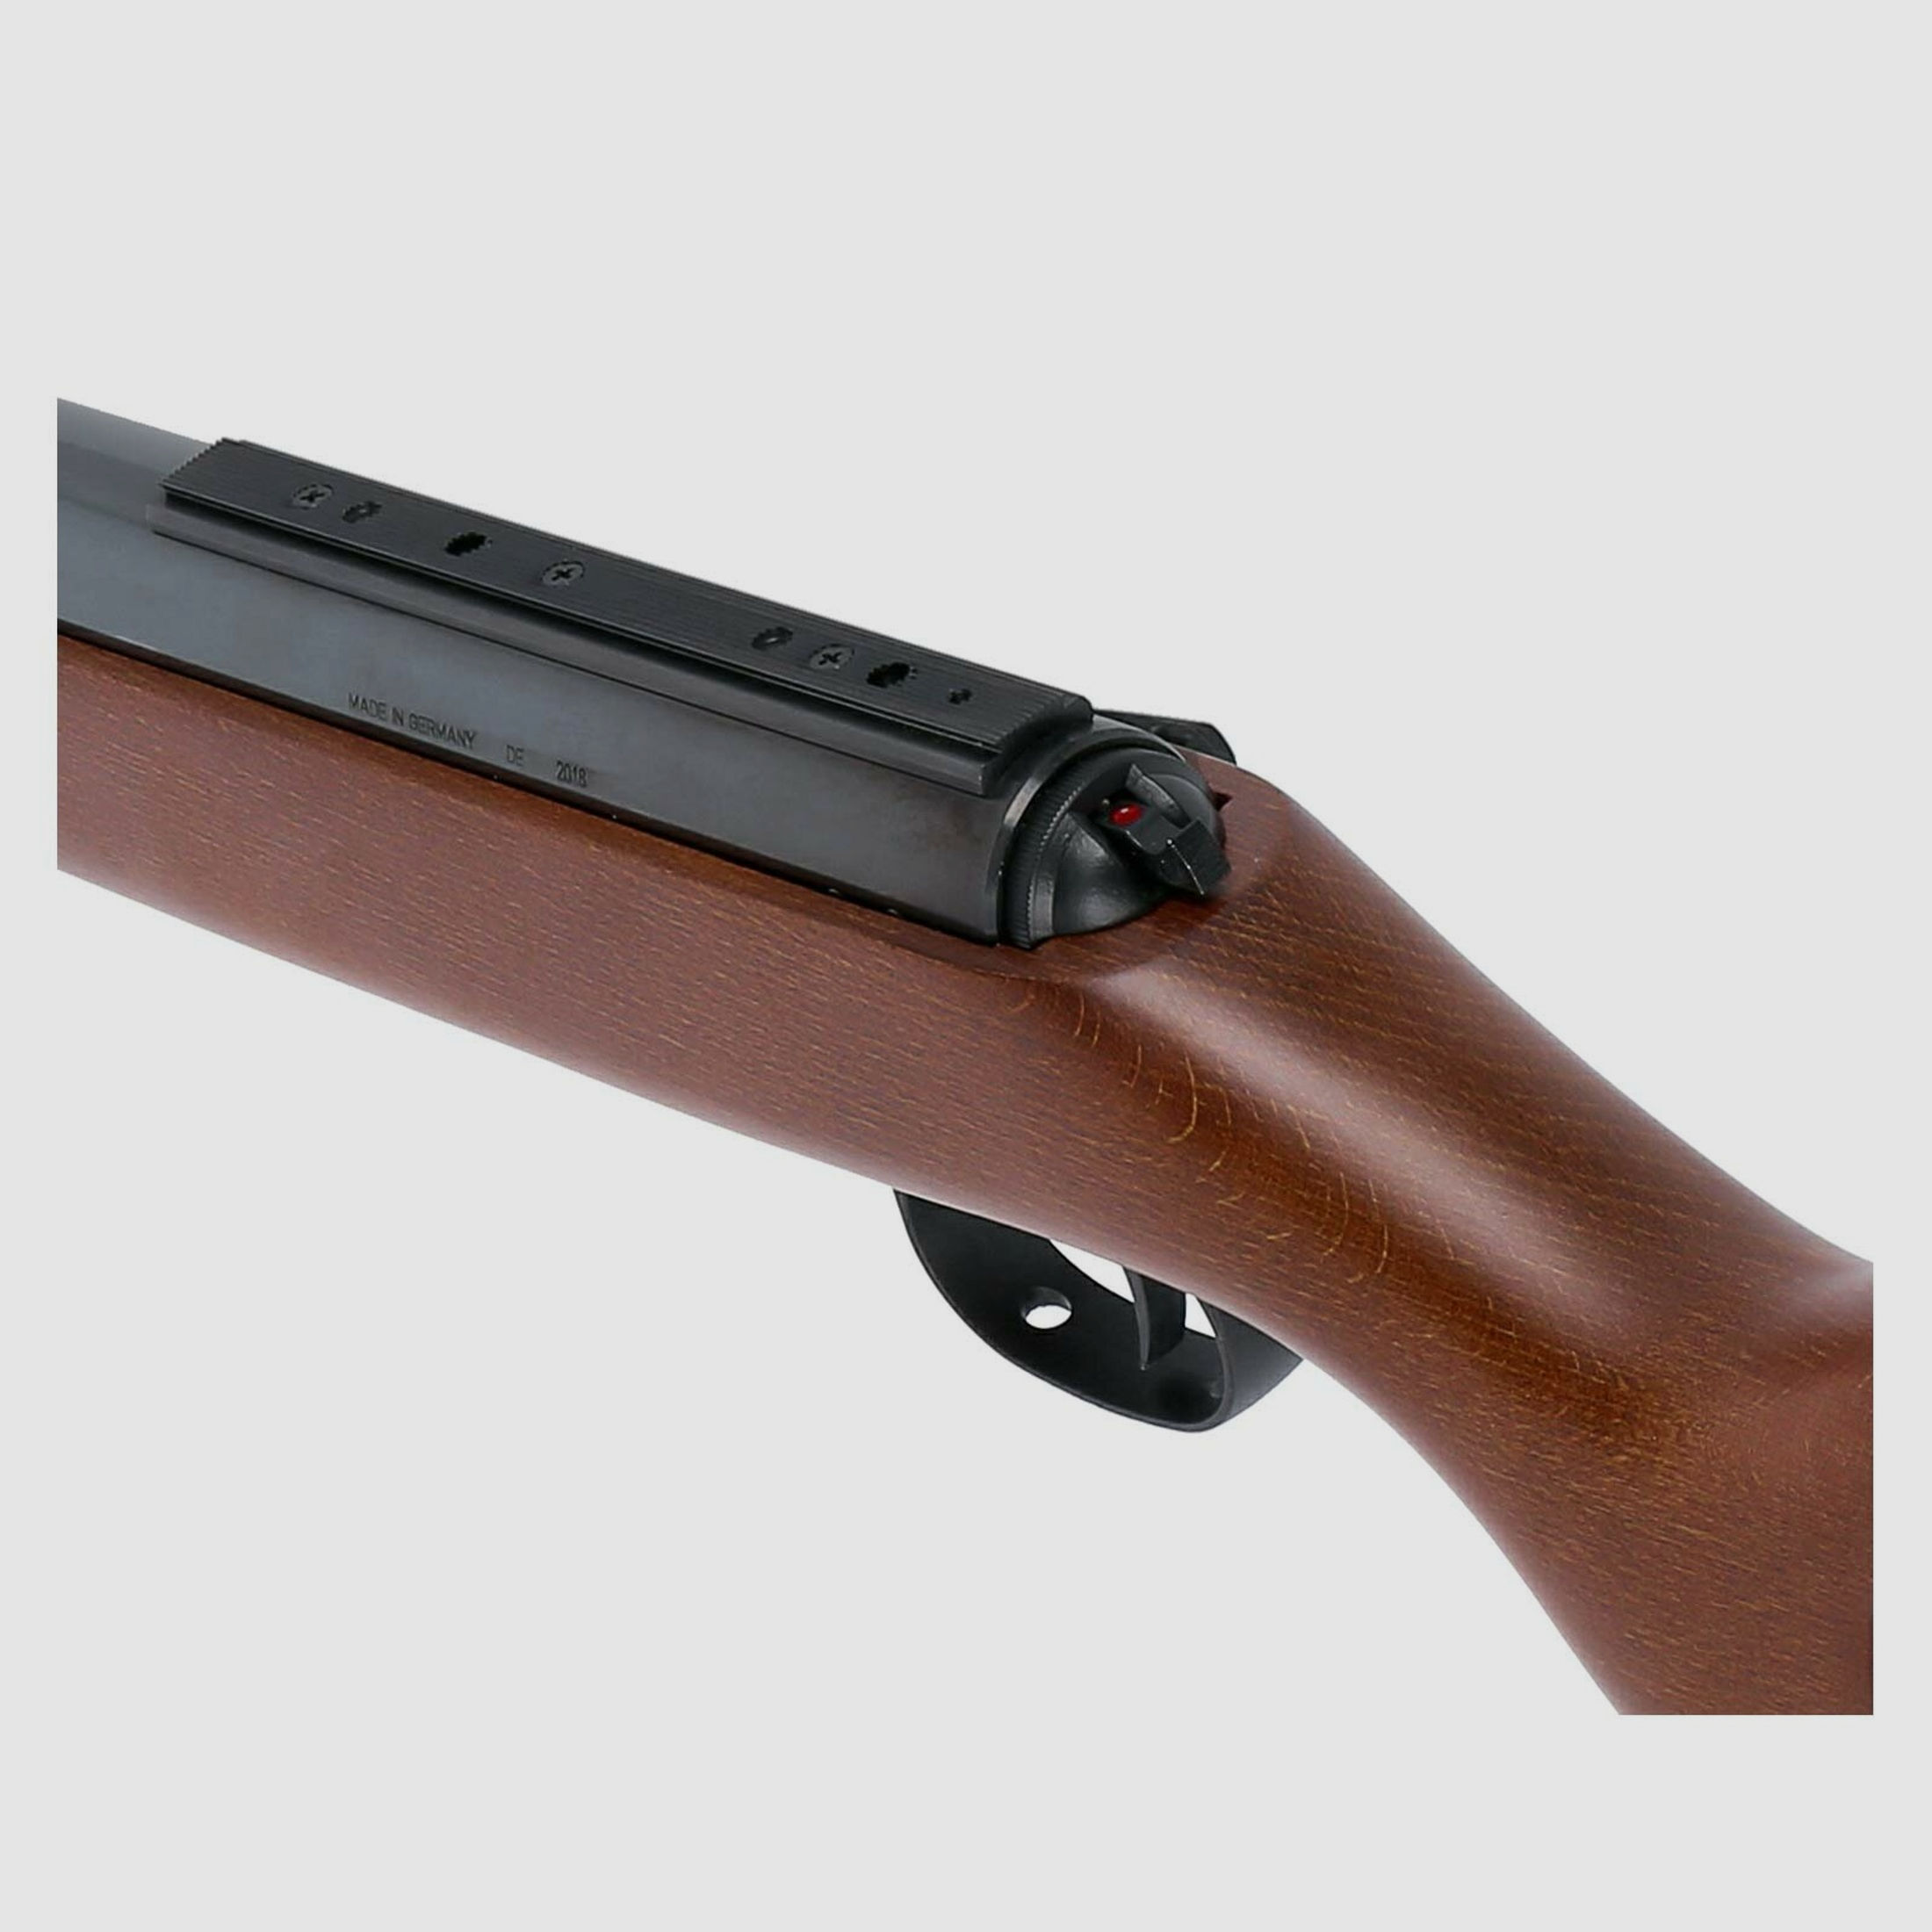 Komplettset Mauser K98 Starrlauf Unterhebelspanner Luftgewehr Kaliber 4,5 mm Diabolo (P18) + Koffer inklusive 2 Zahlenschlösser + 1000 Diabolos